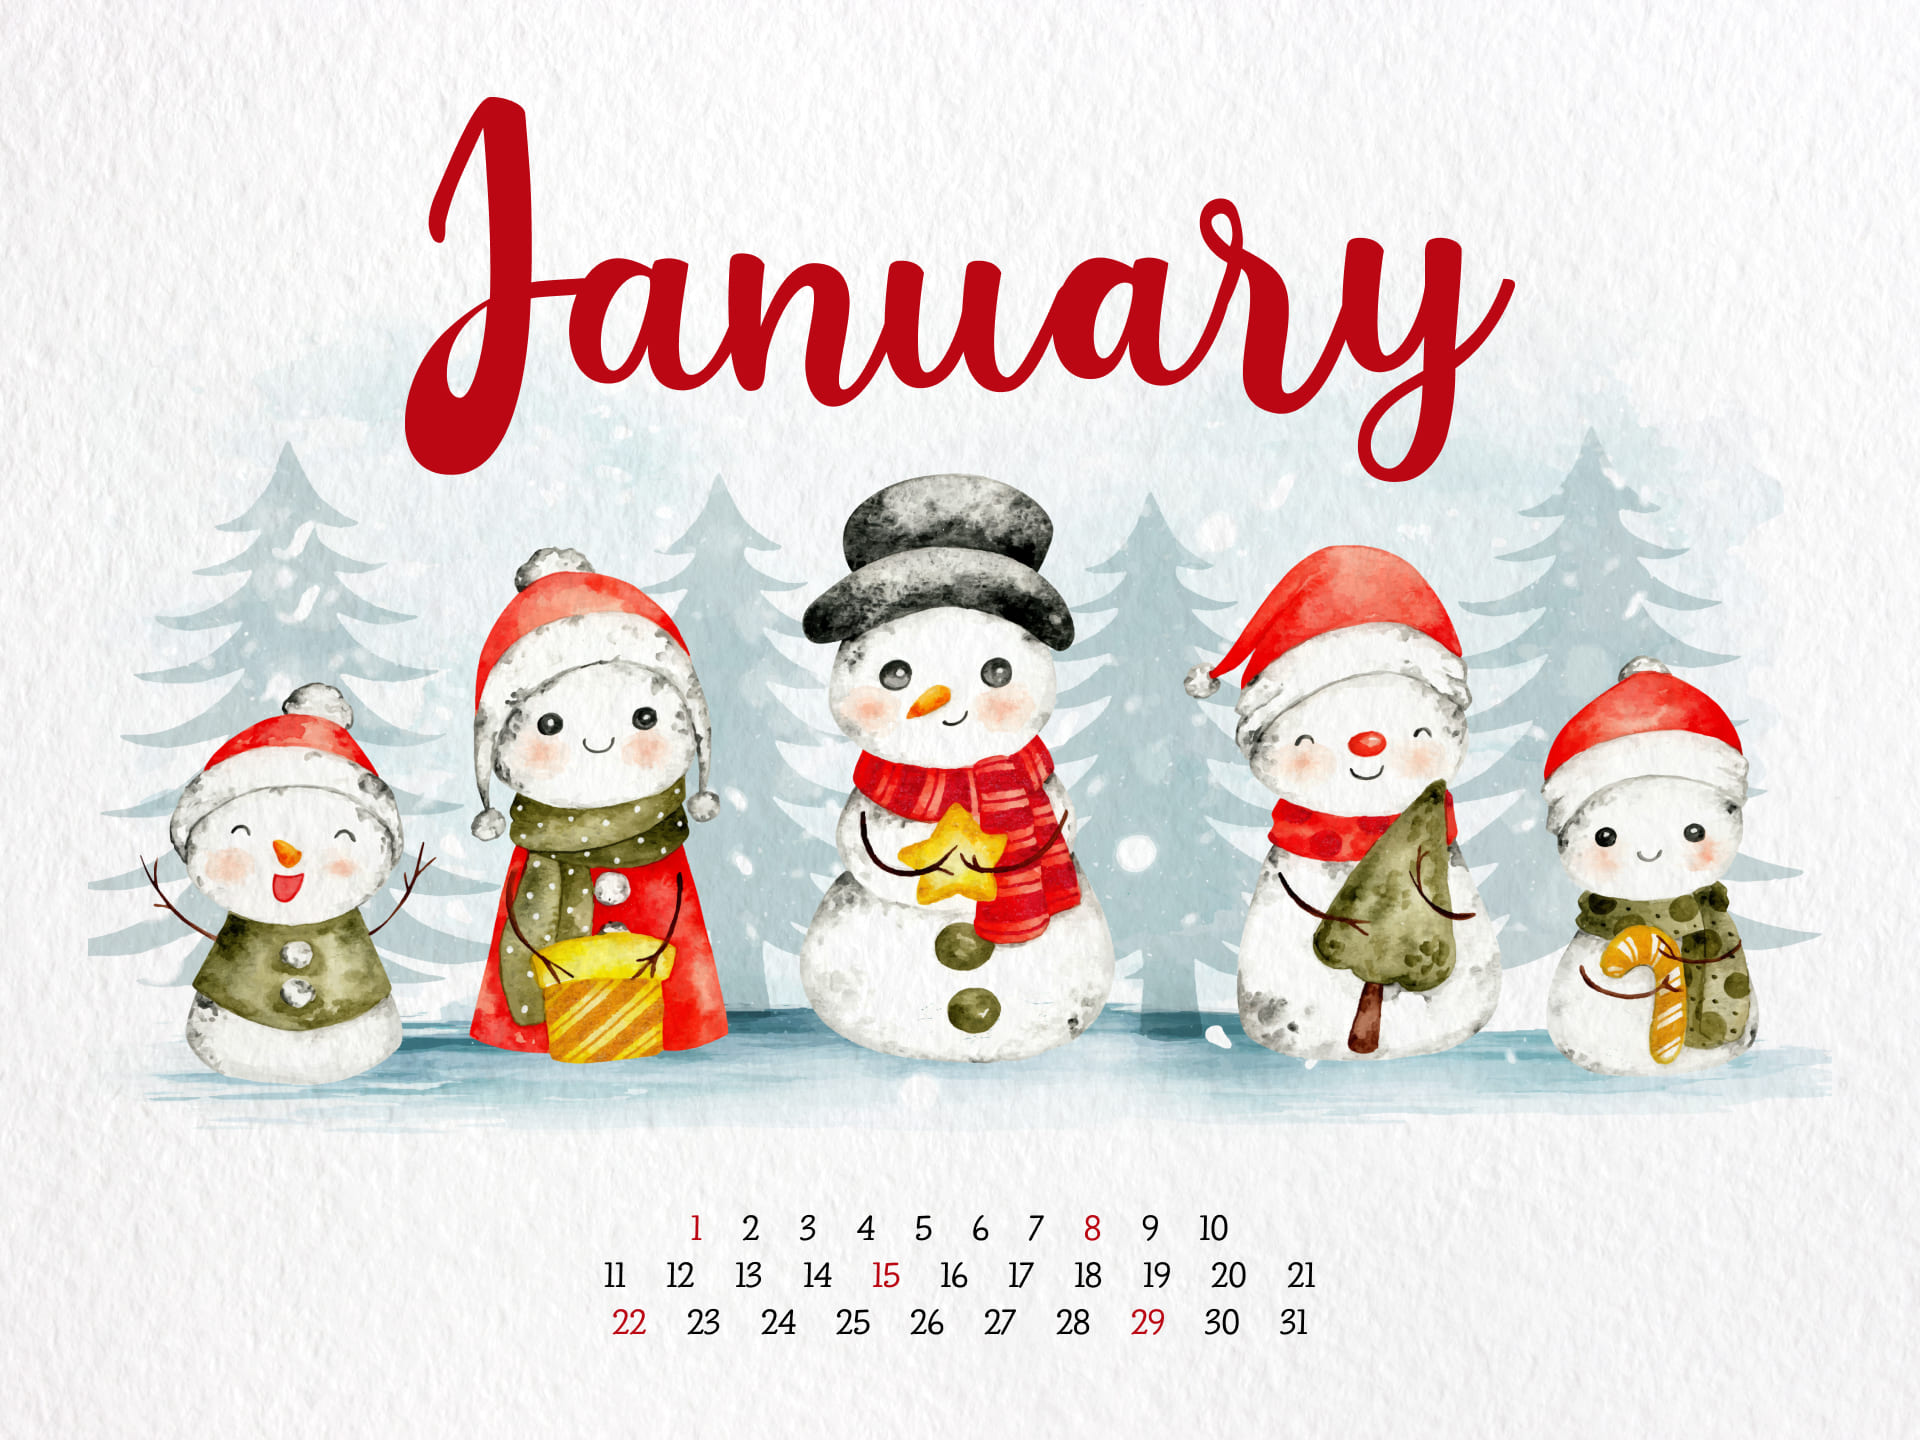 So cute January calendar with snowman.